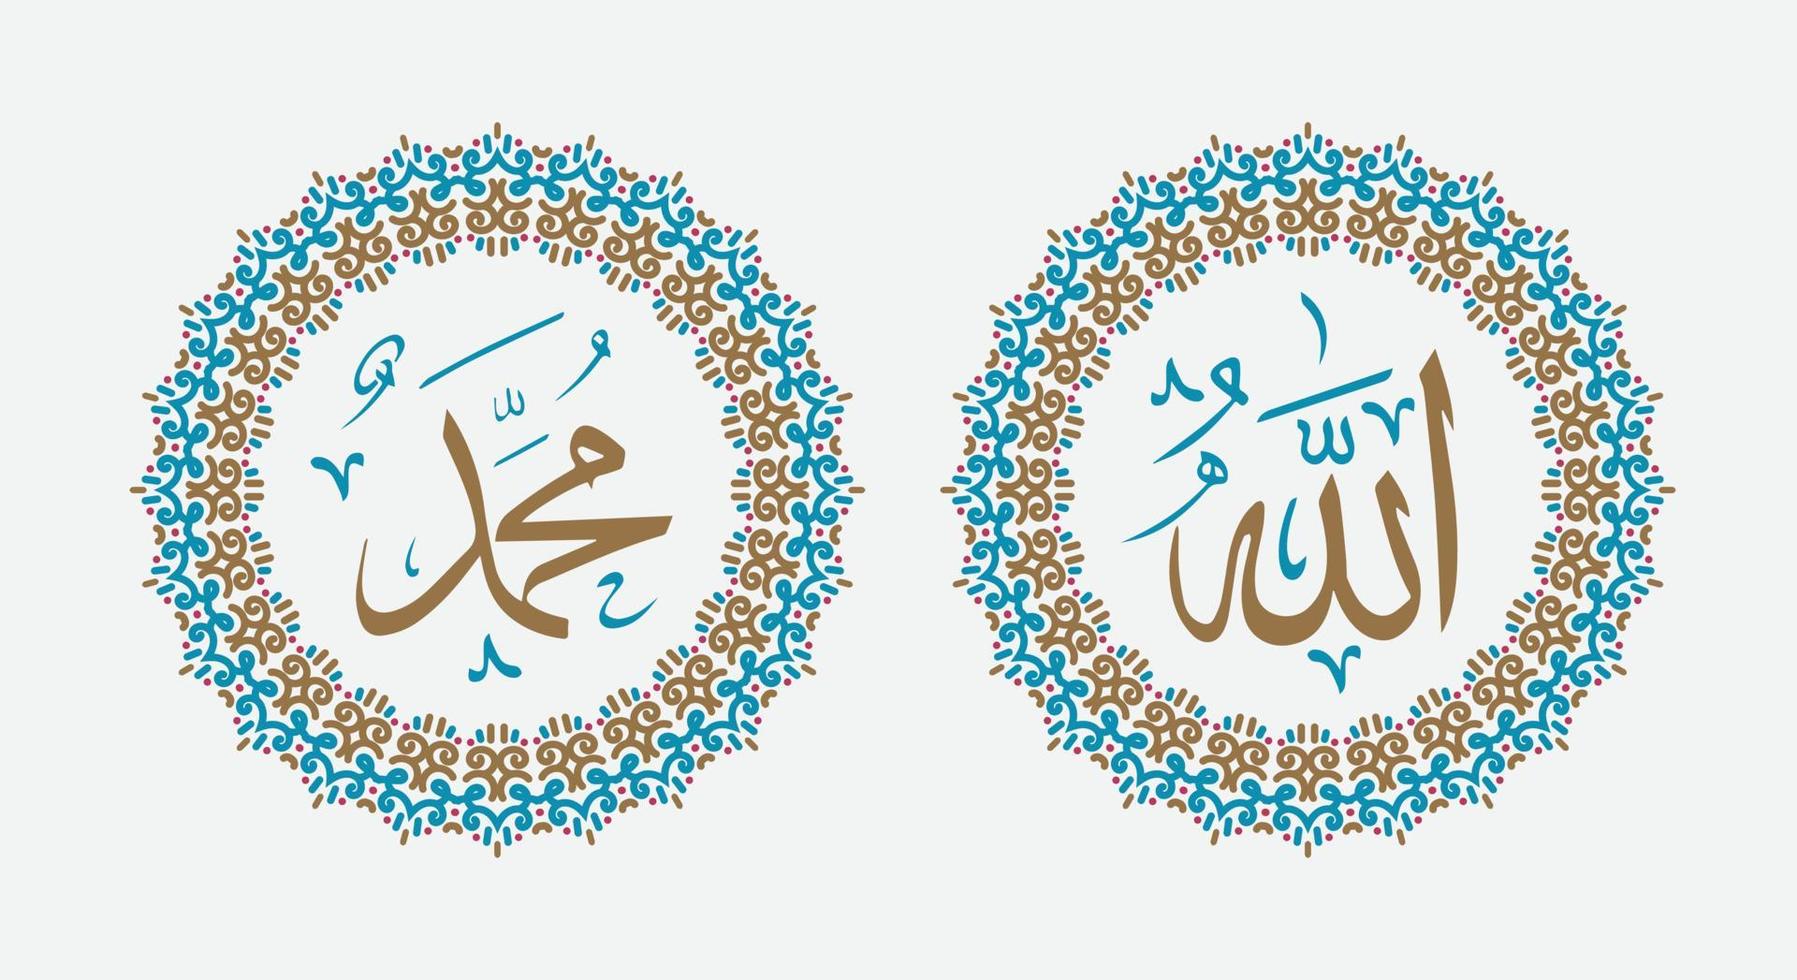 allah och muhammed, gud och profet i islamisk väggkonstdekoration med vintagefärg vektor